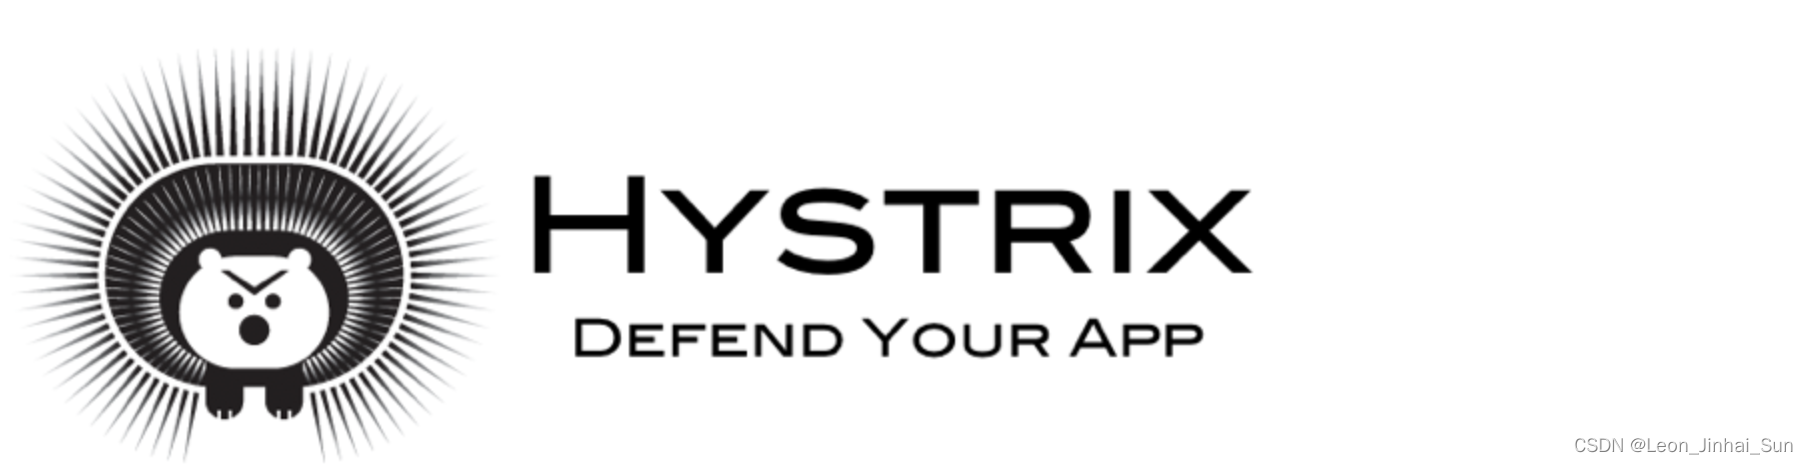 Hystrix组件